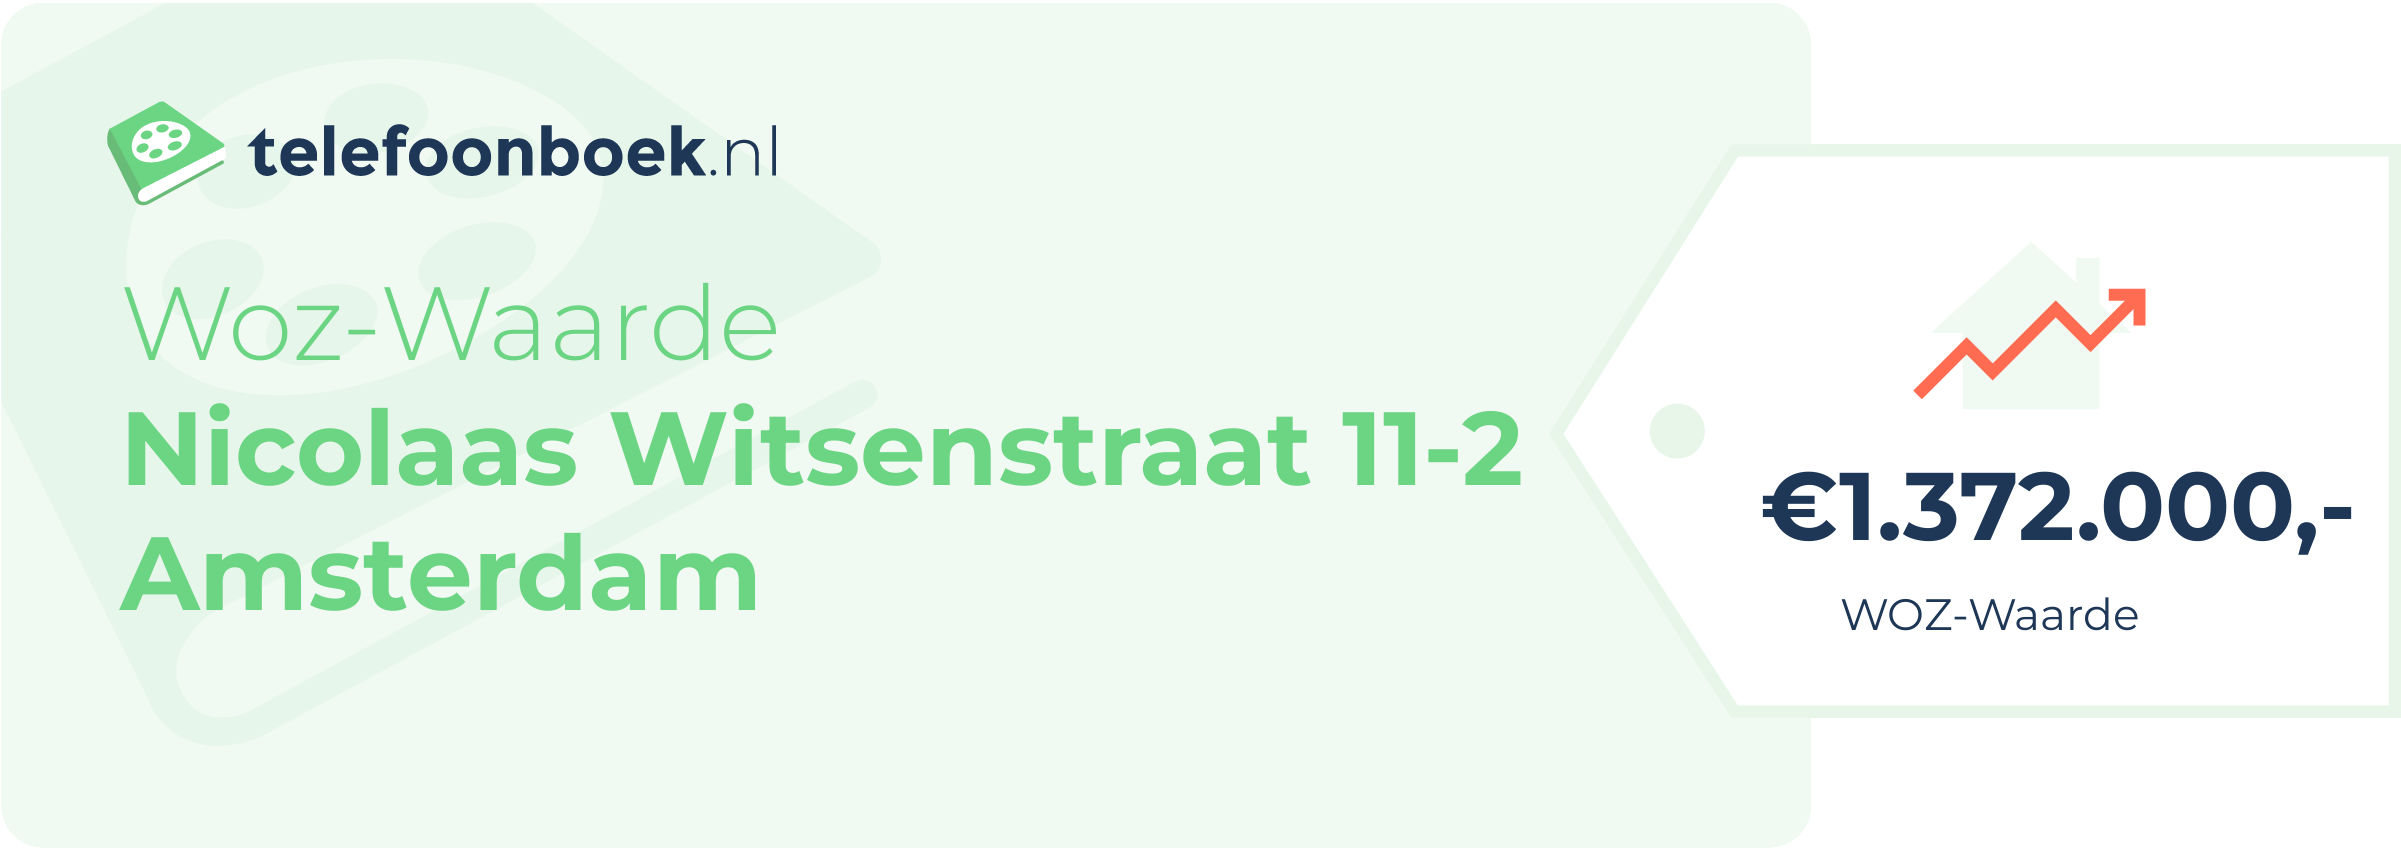 WOZ-waarde Nicolaas Witsenstraat 11-2 Amsterdam